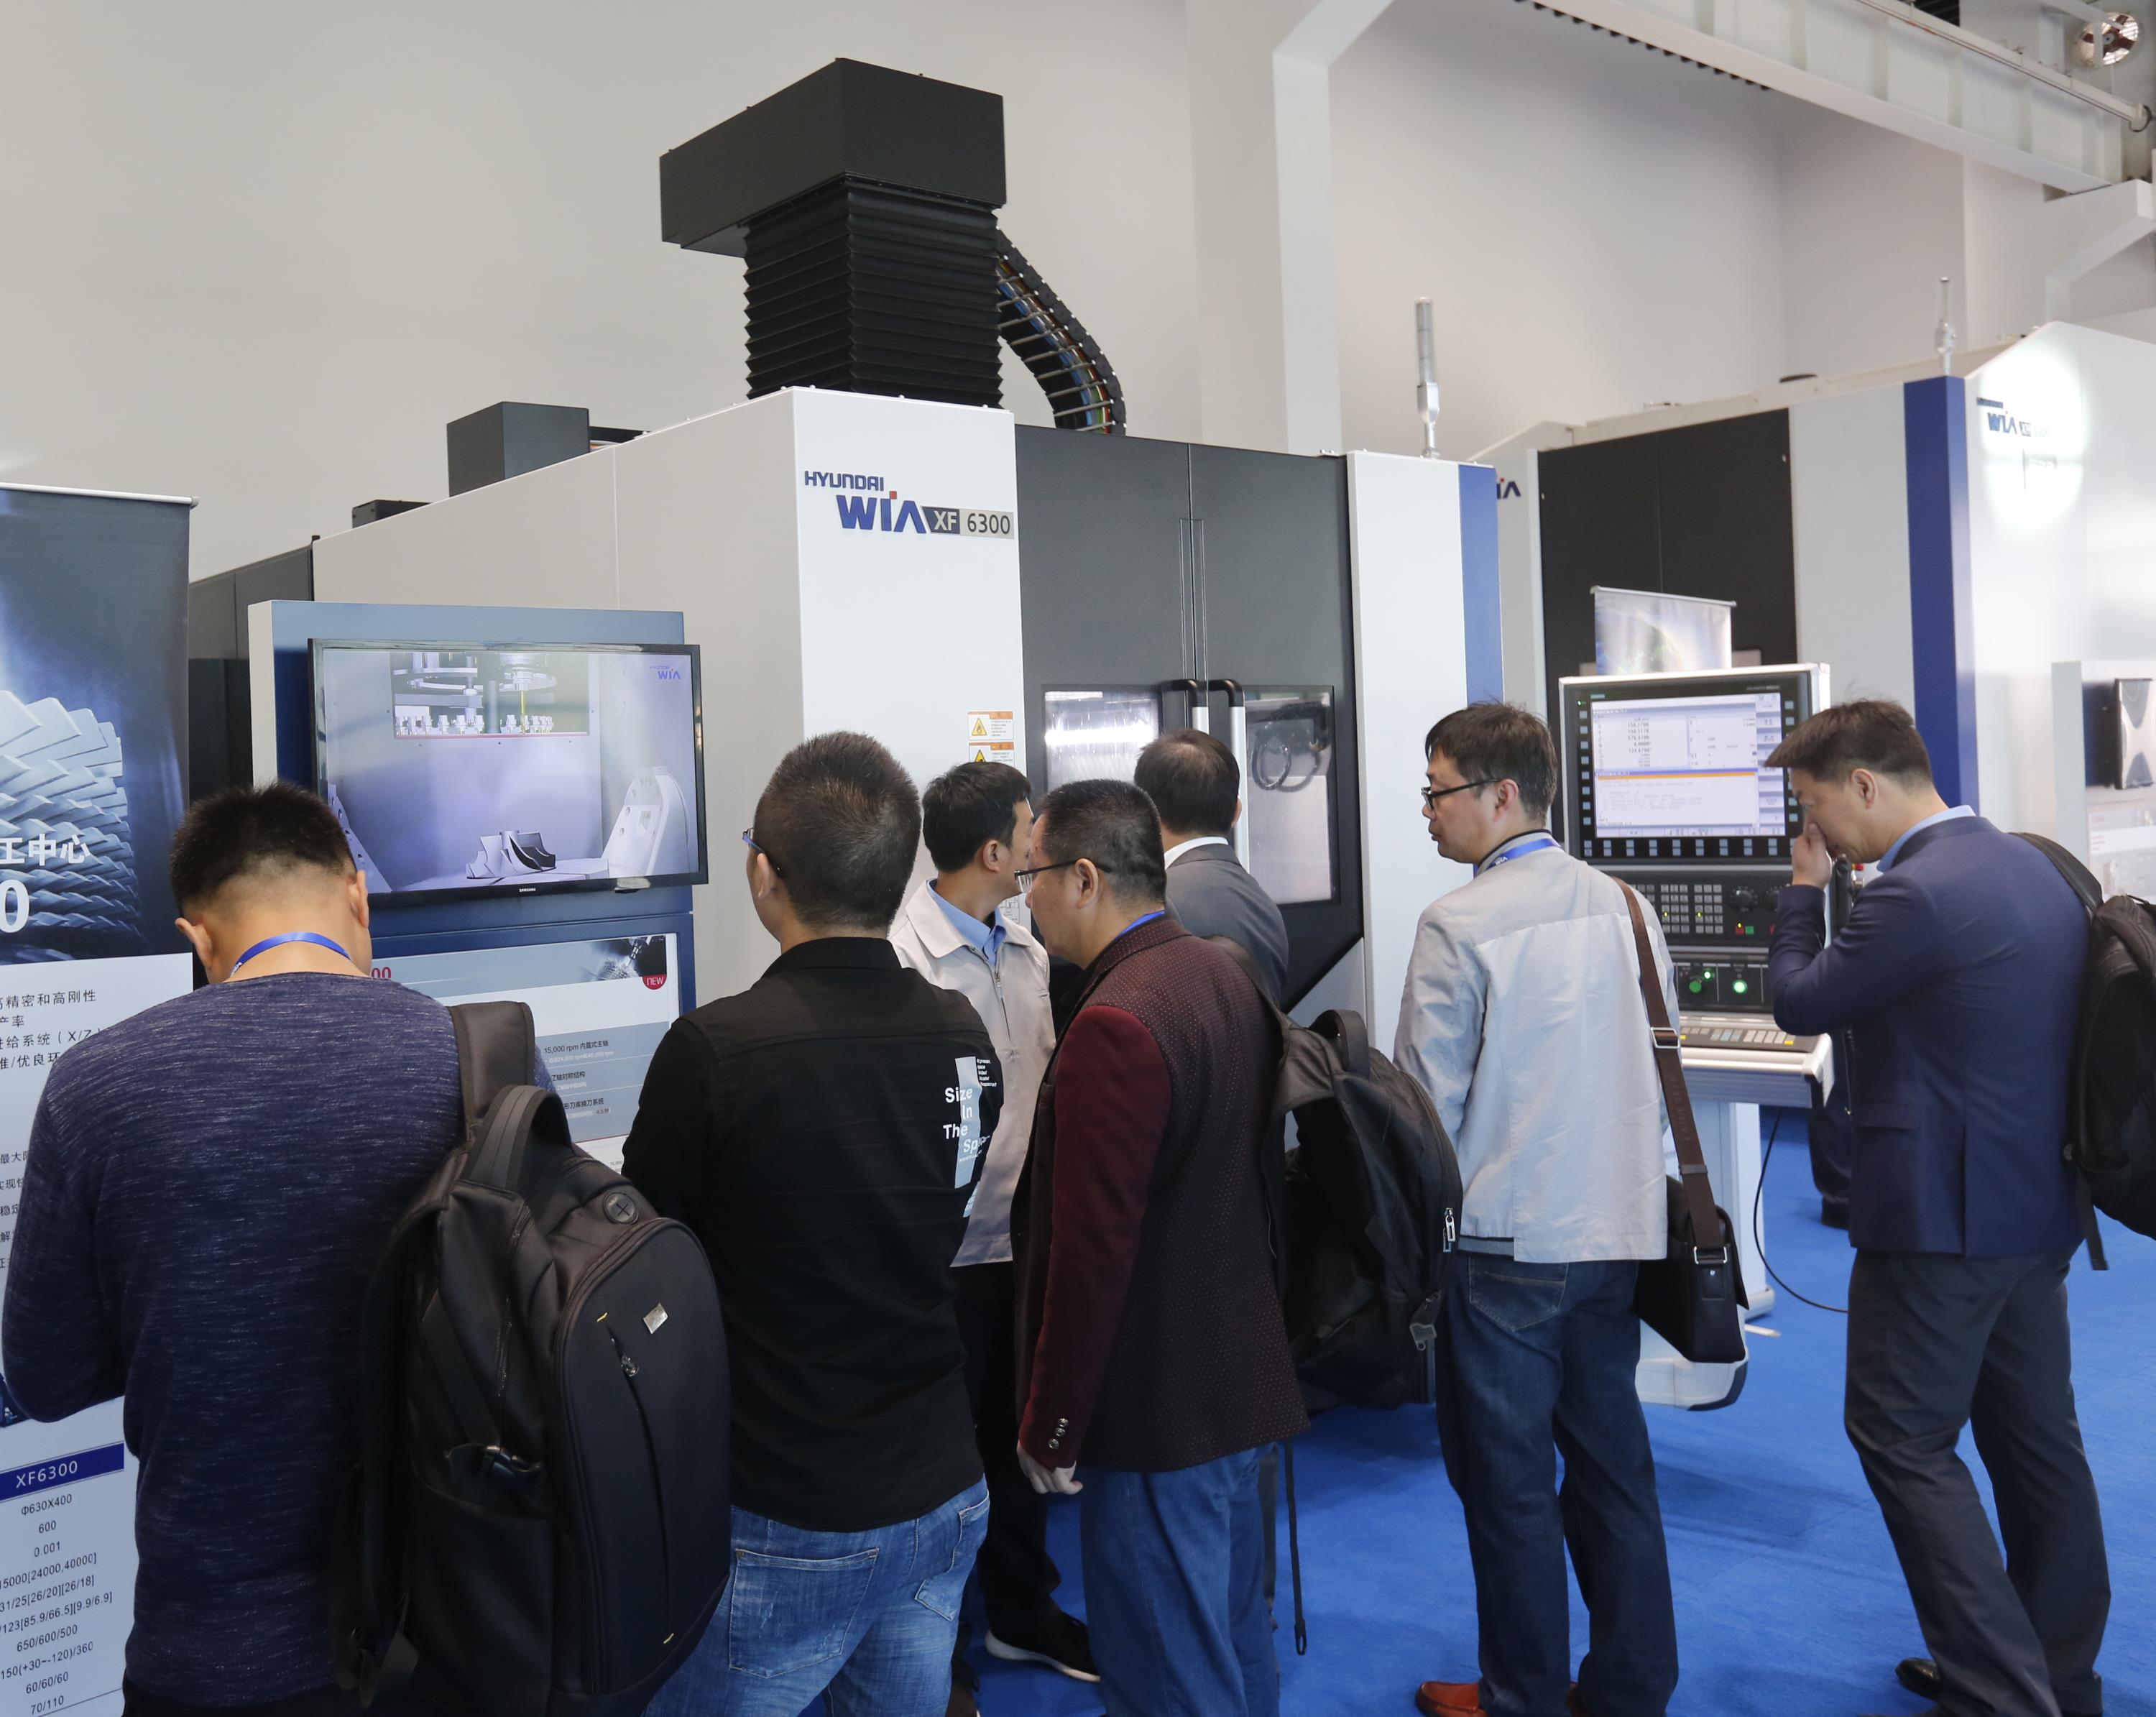 중국 공작기계 고객들이 16일 중국 강소성 현대위아 강소법인 공작기계 전시장 오픈하우스 행사에서 현대위아의 대표 공작기계인 XF6300을 살펴보고 있다. 현대위아 제공